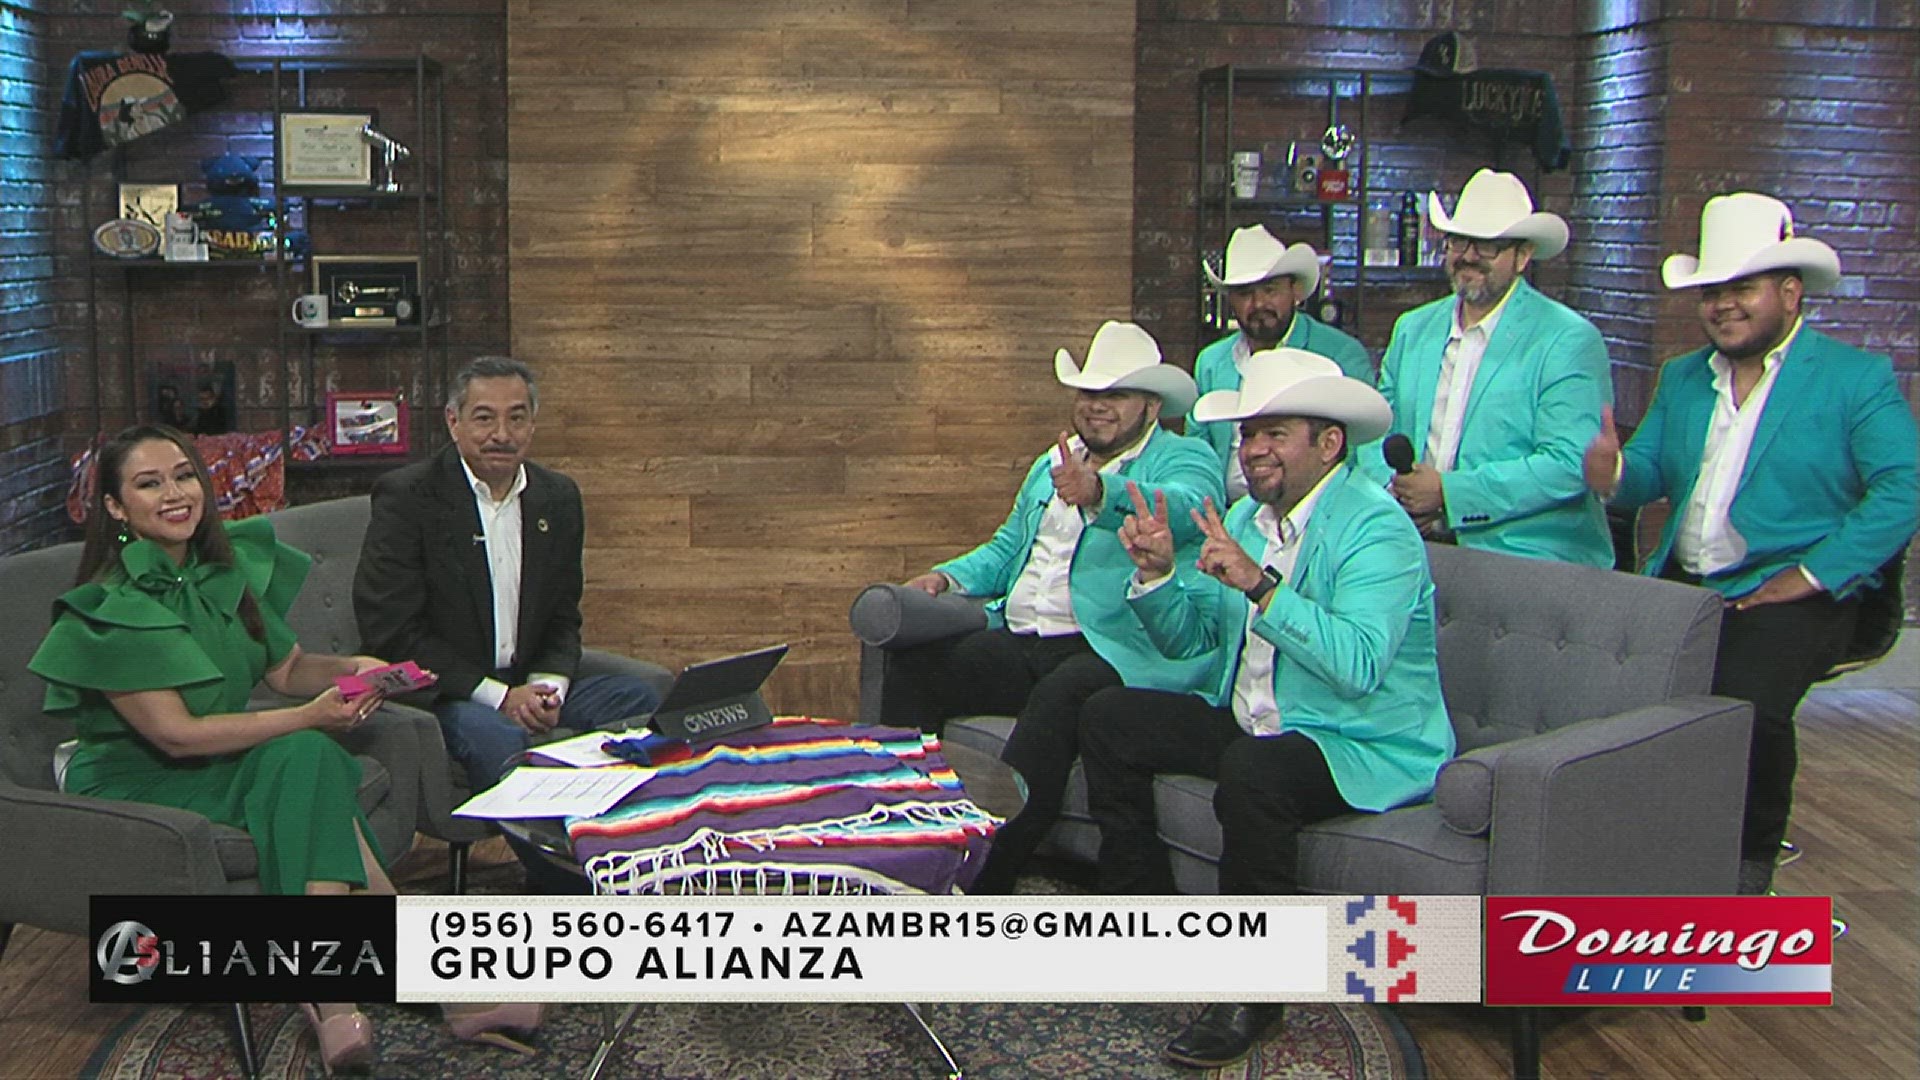 Grupo Alianza de Palmview, Texas, habla sobre acercar la música tejana a los jóvenes con Domingo Live.